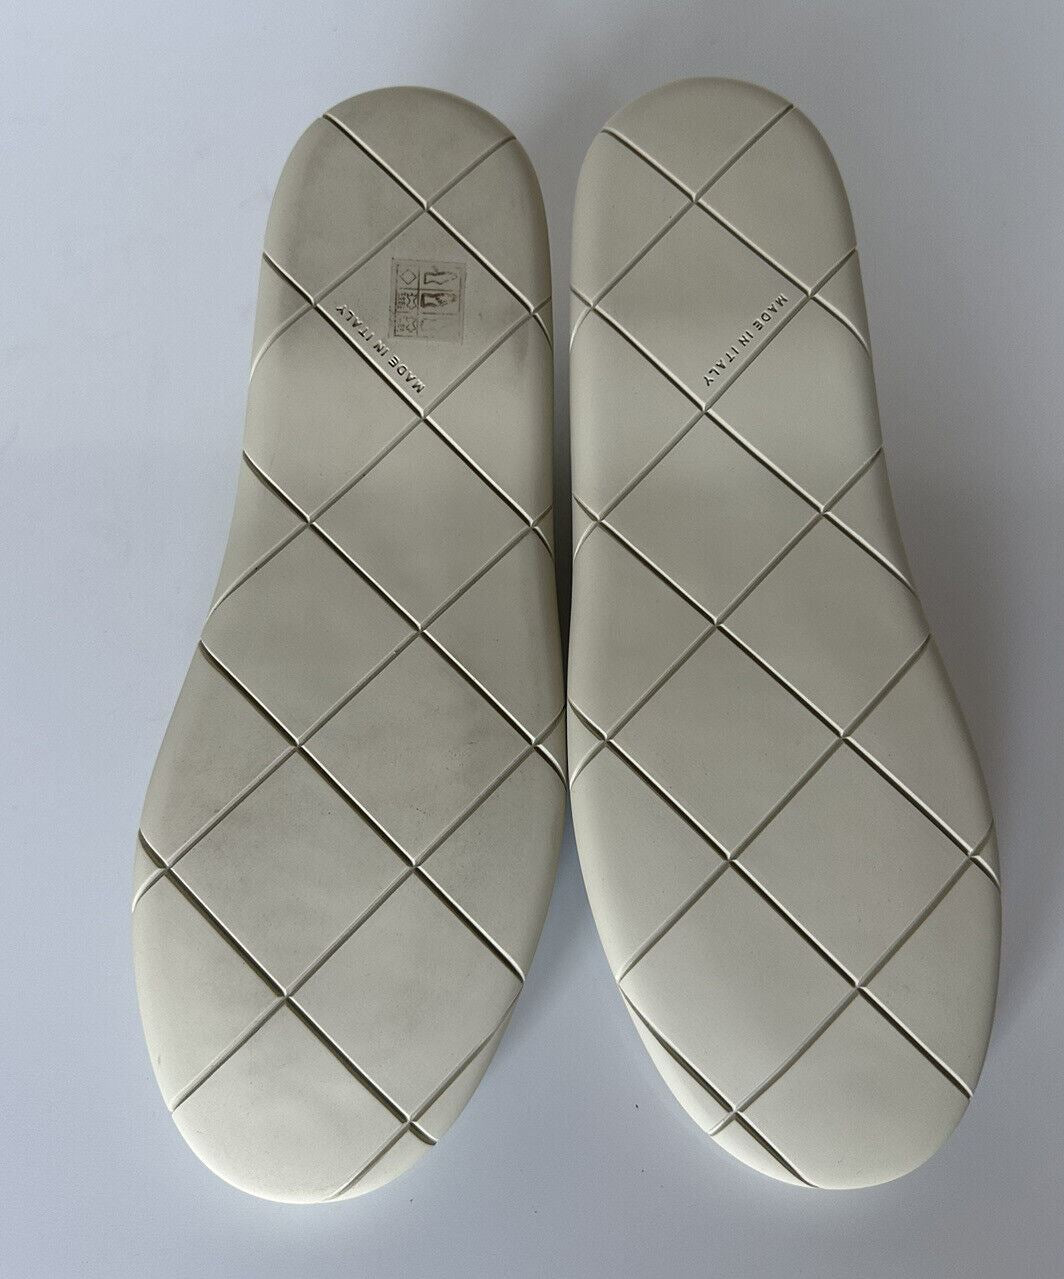 Мужские кроссовки Bottega Veneta Lagoon Nappa из кожи морской соли стоимостью 750 долларов США 10 США 651305 